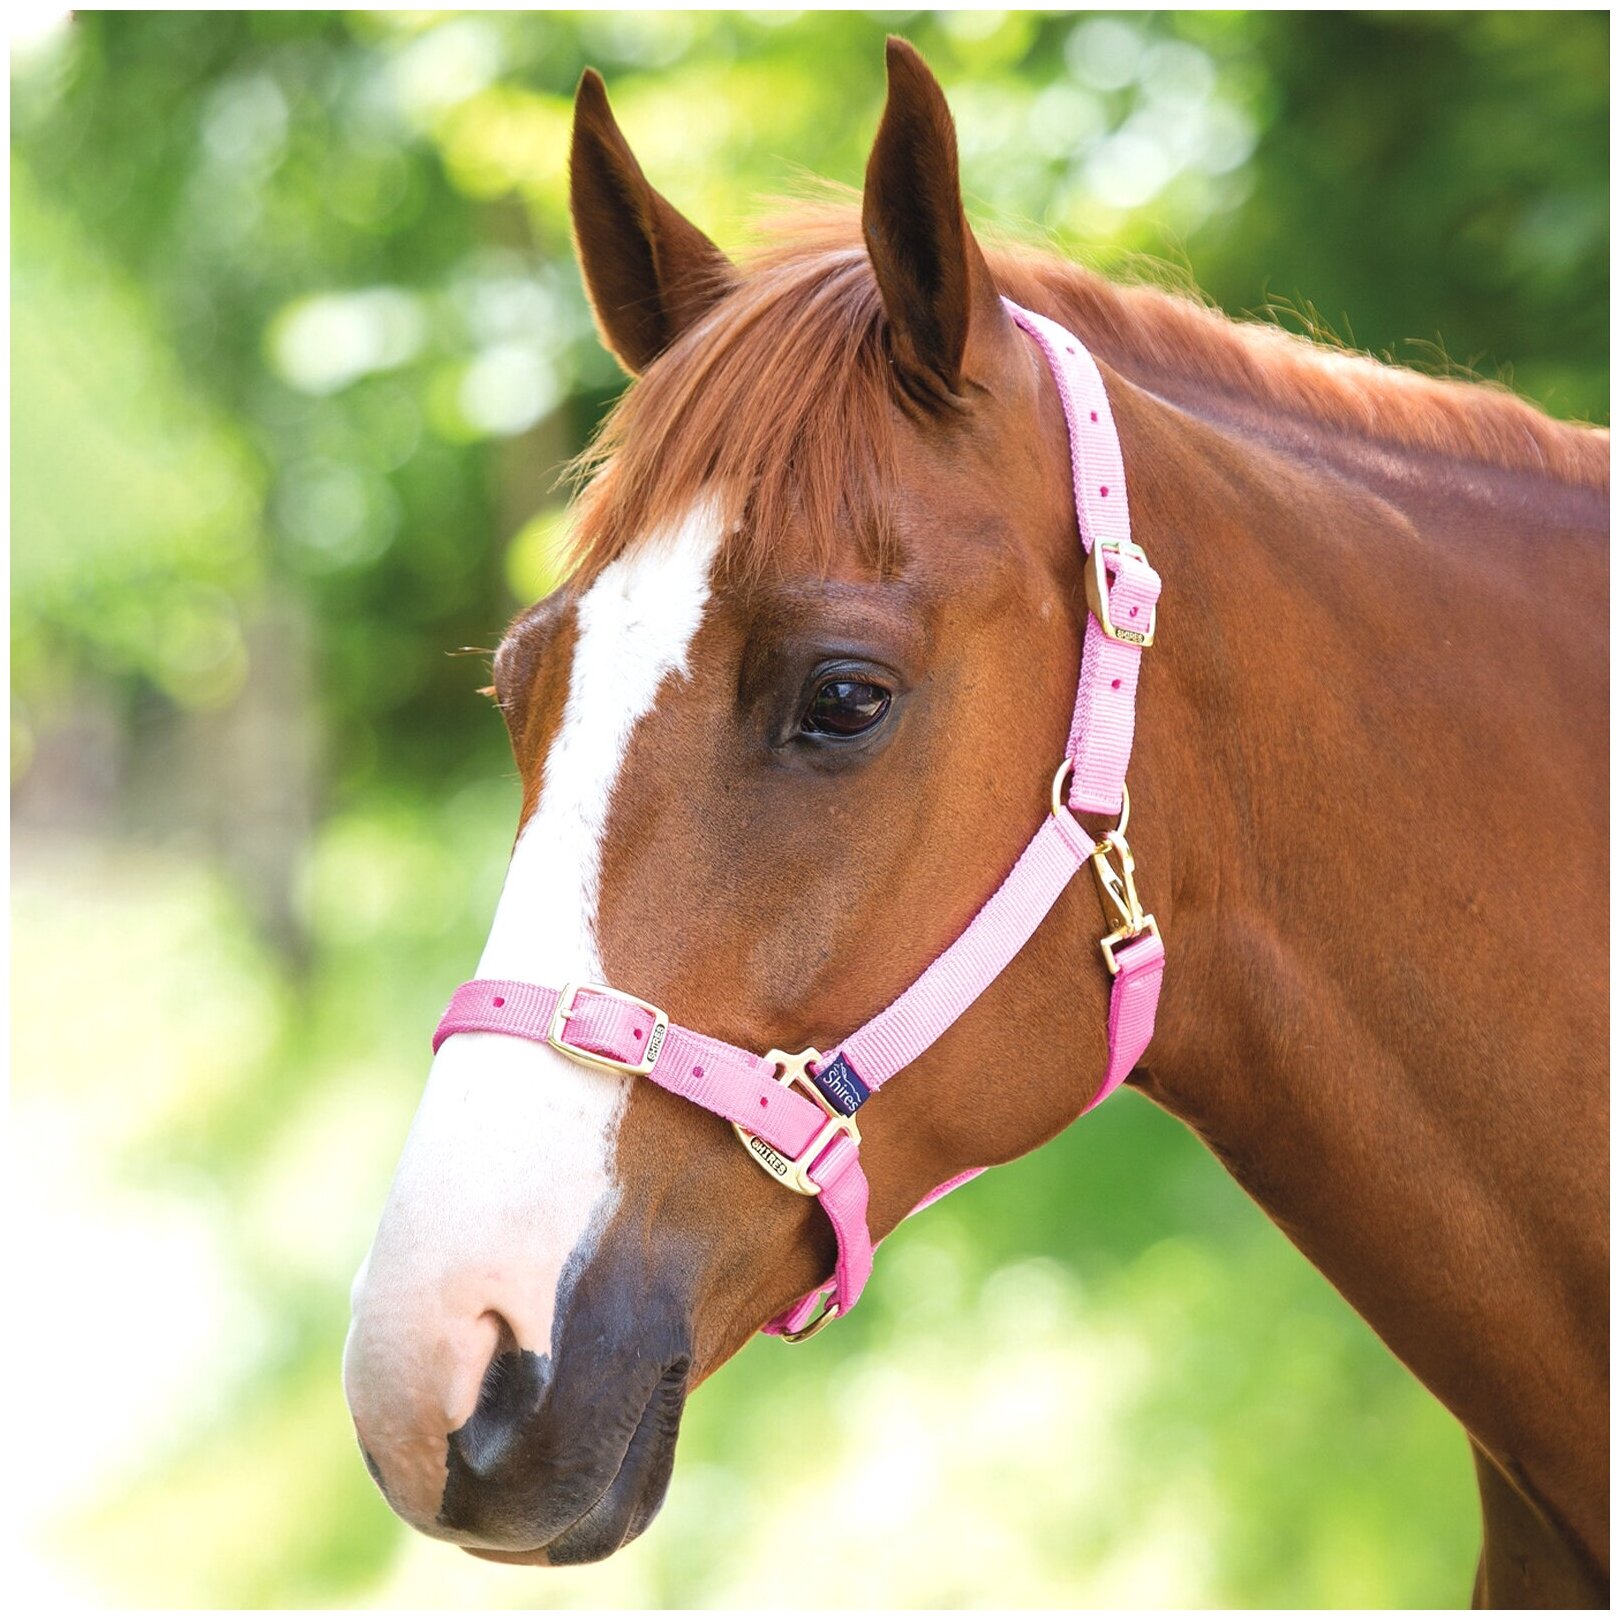 SHIRES Недоуздок для лошади регулируемый, COB, розовый (Великобритания) - фото №1